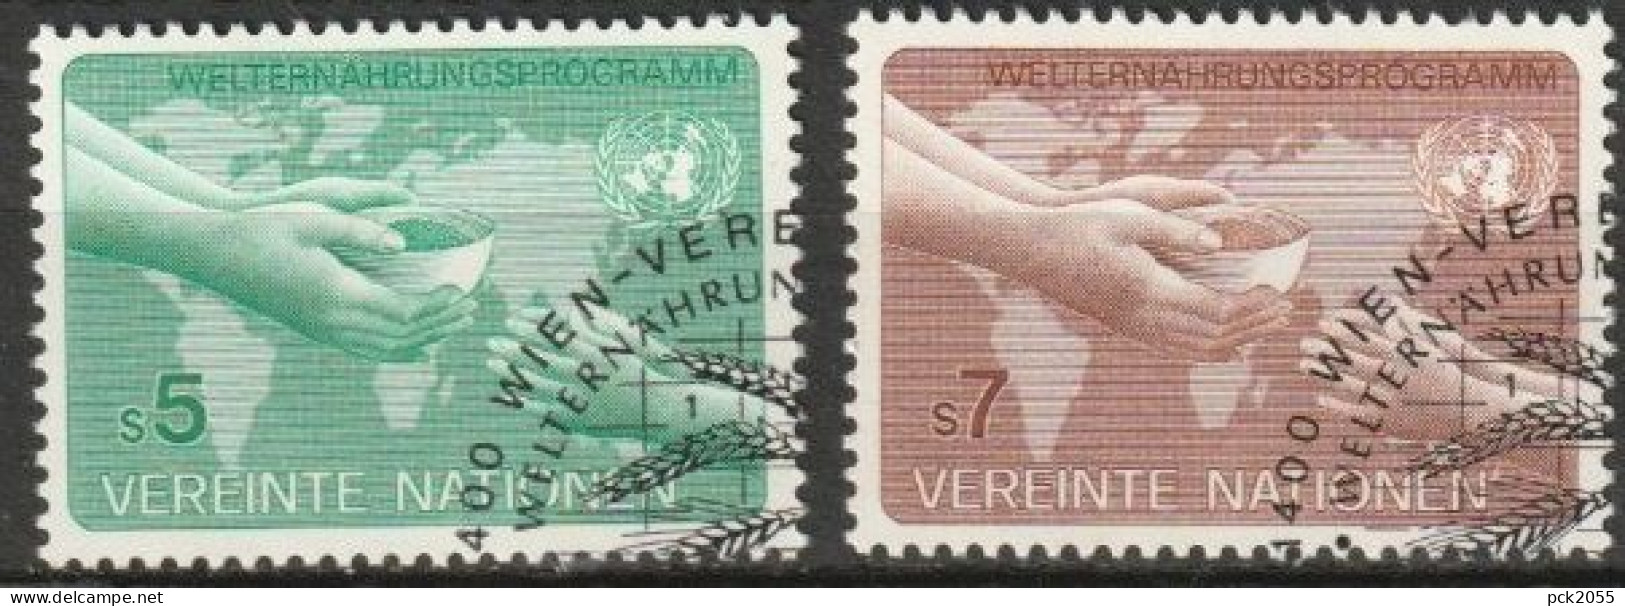 UNO Wien 1983 MiNr.32 - 33 O Gest. Welternährungsprogramm ( 2176 ) - Used Stamps